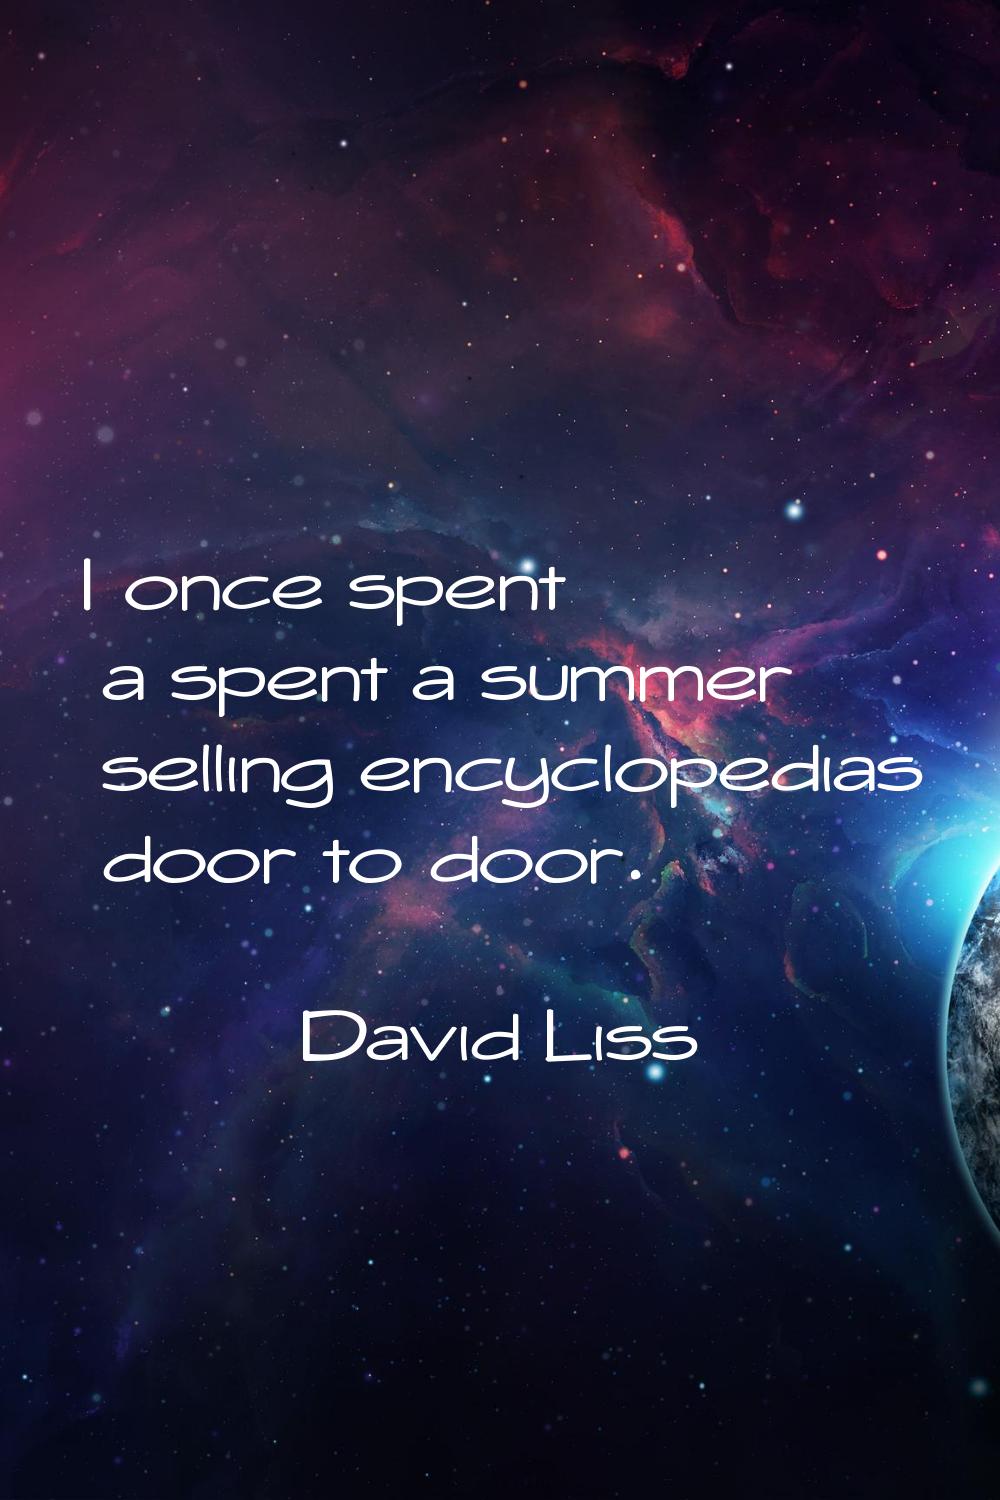 I once spent a spent a summer selling encyclopedias door to door.